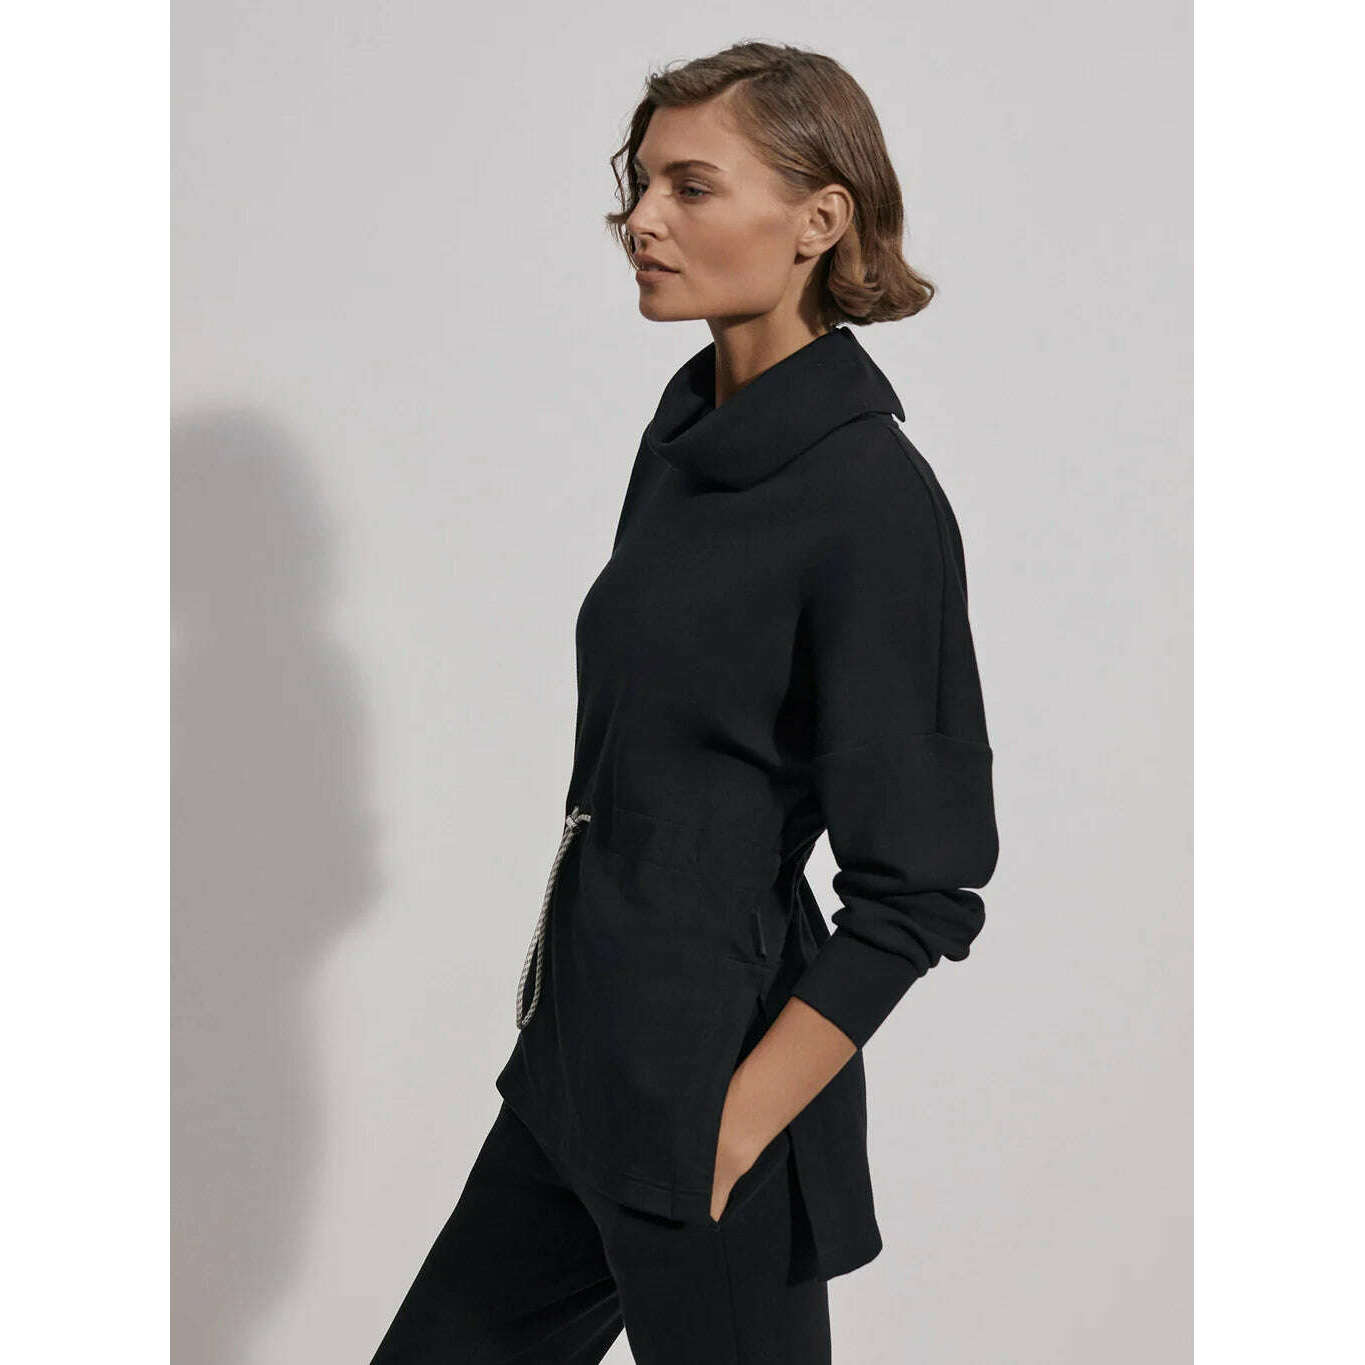 8.28 Boutique:Varley,Varley Freya Sweatshirt in Black,sweatshirt